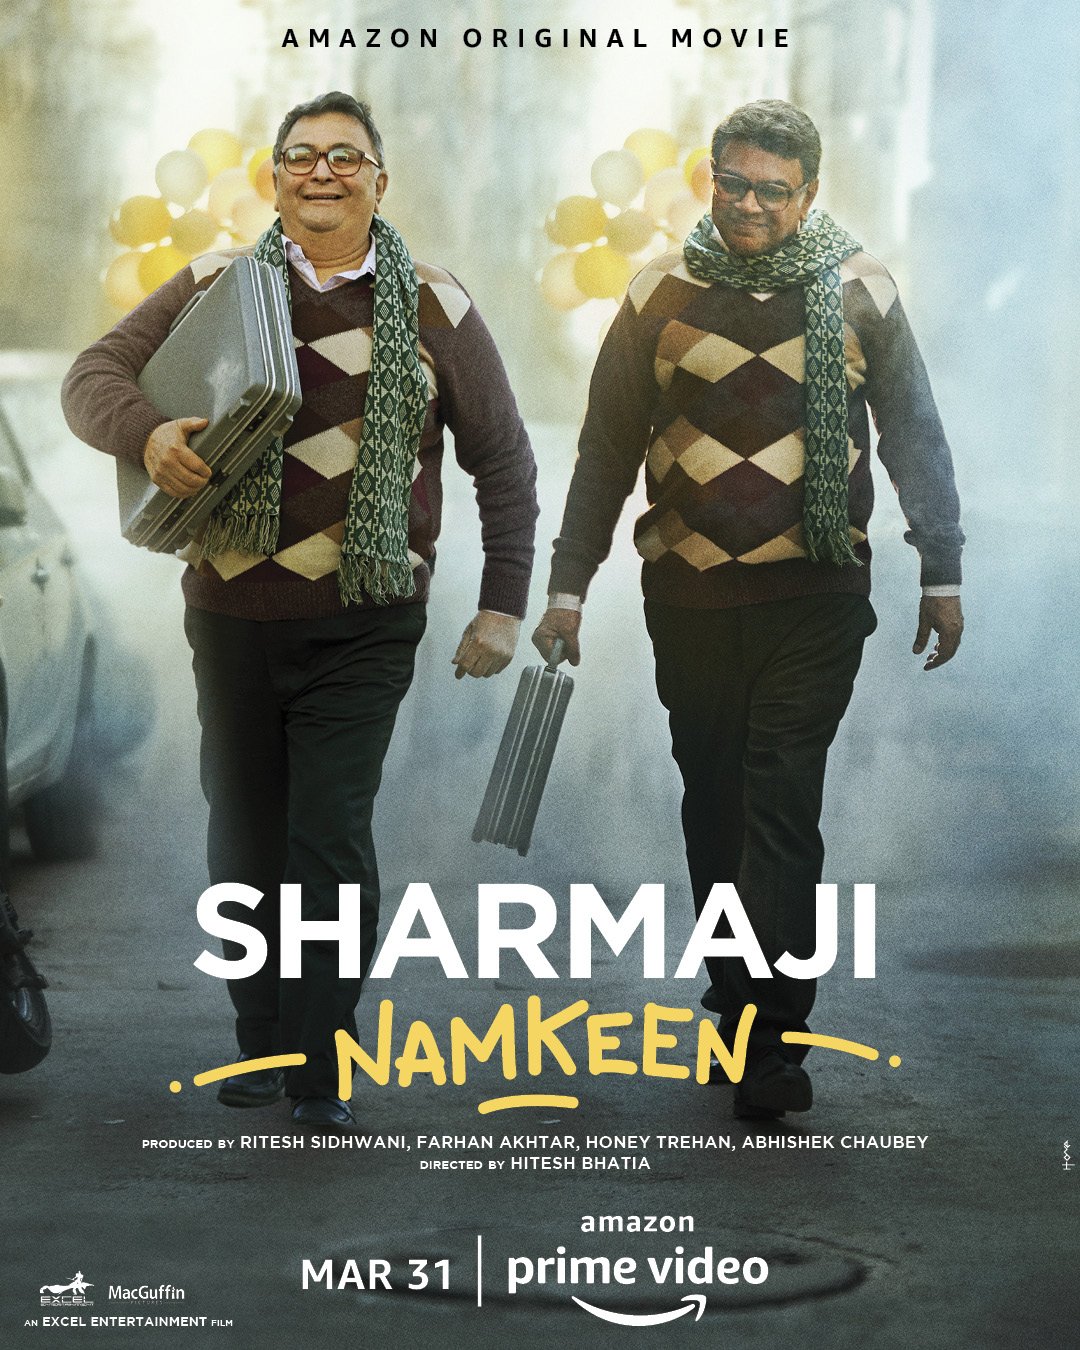 Sharmaji Namkeen (2022) HDRip Hindi Movie Watch Online Free